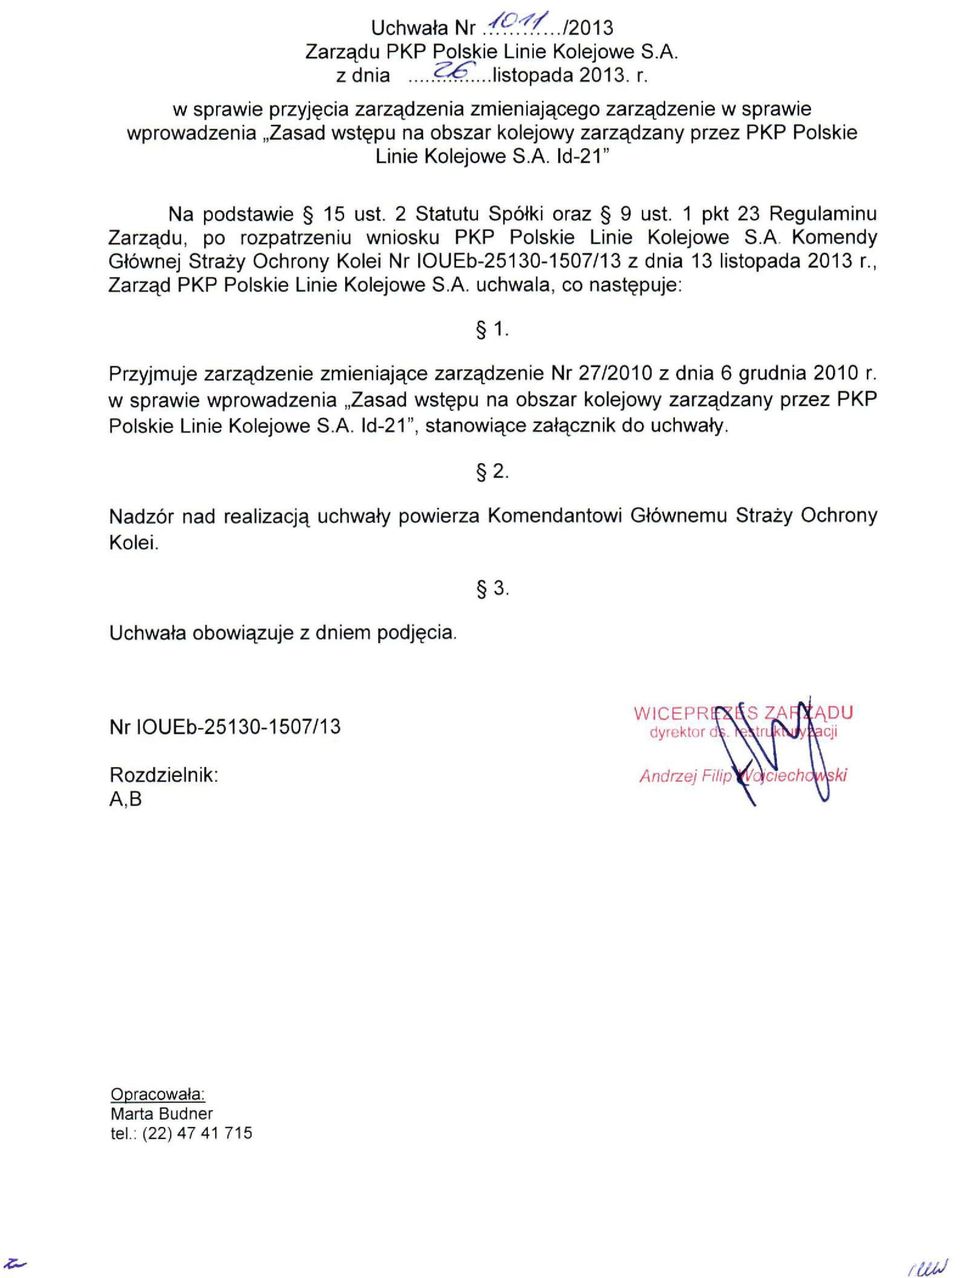 2 Statutu Spółki oraz 9 ust. 1 pkt 23 Regulaminu Zarzą du, po rozpatrzeniu wniosku PKP Polskie Linie Kolejowe S.